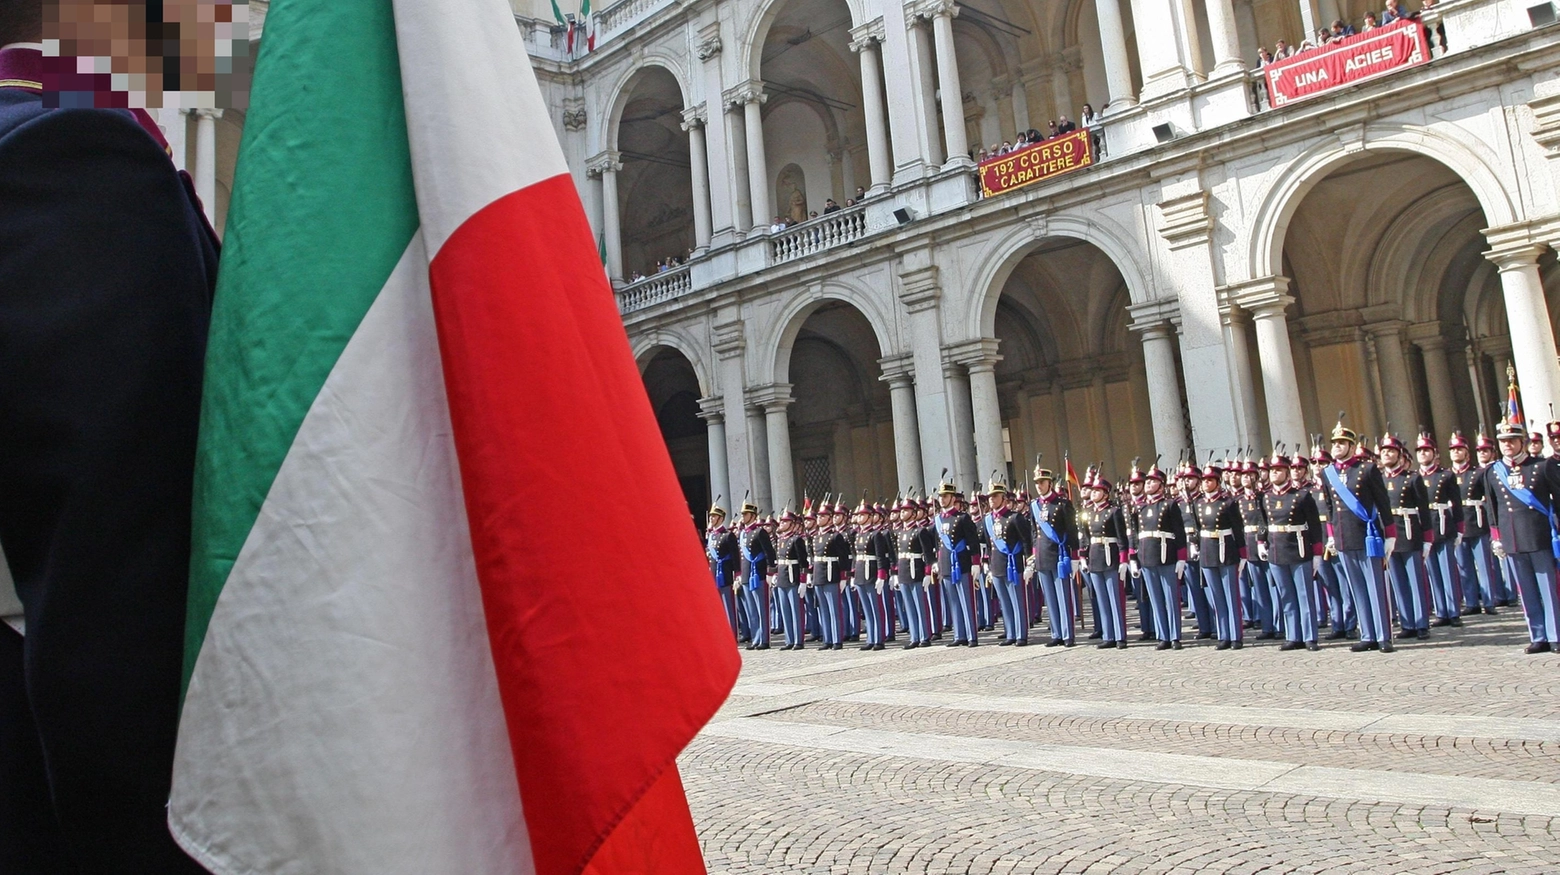 "Sessismo e punizioni all'Accademia militare di Modena": indagato un ufficiale